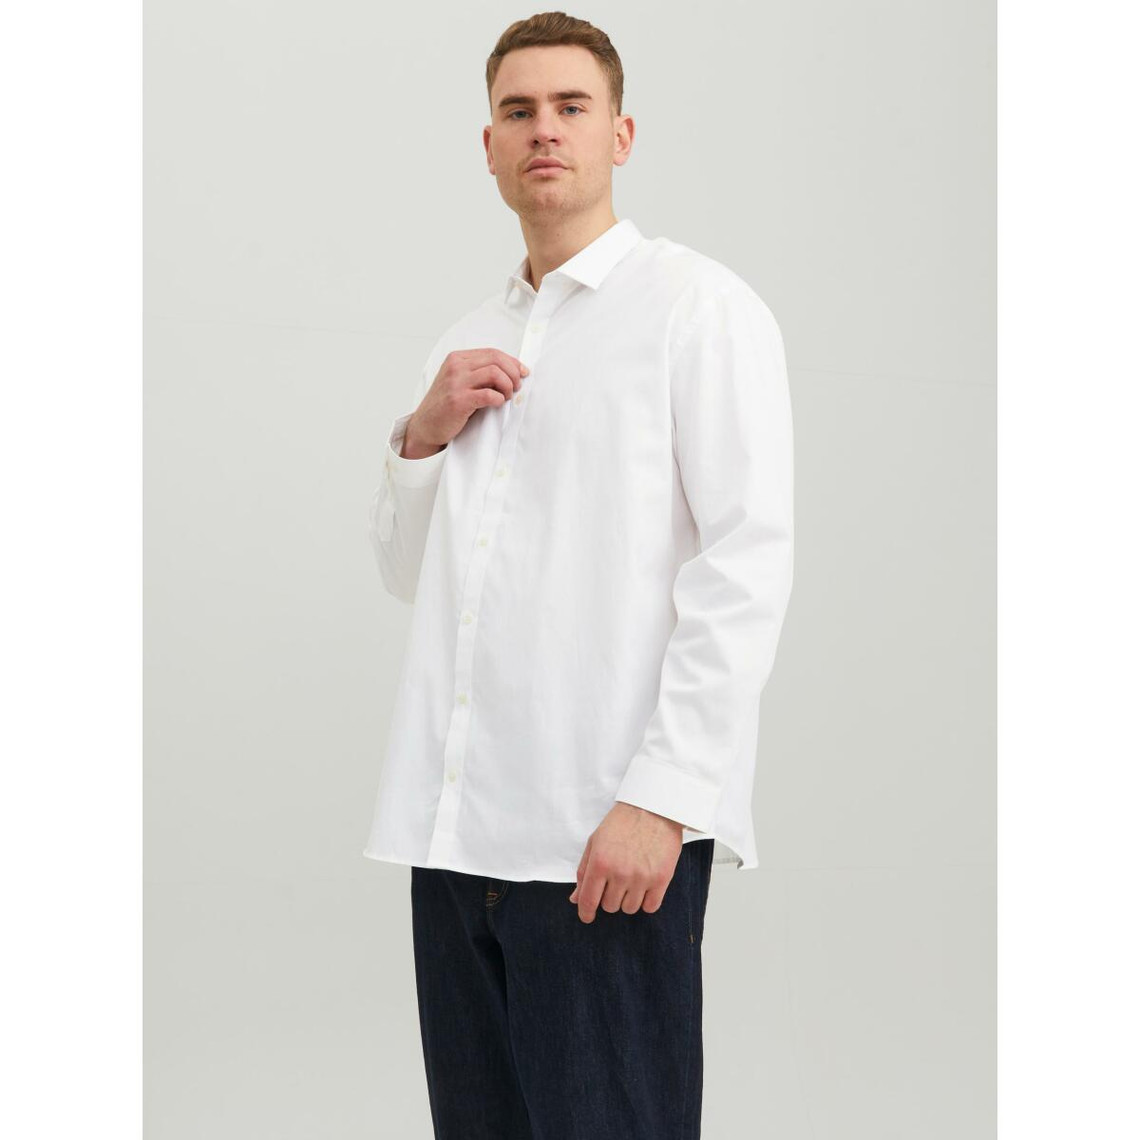 Chemise habillée Loose Fit Col chemise Manches longues Blanc en coton